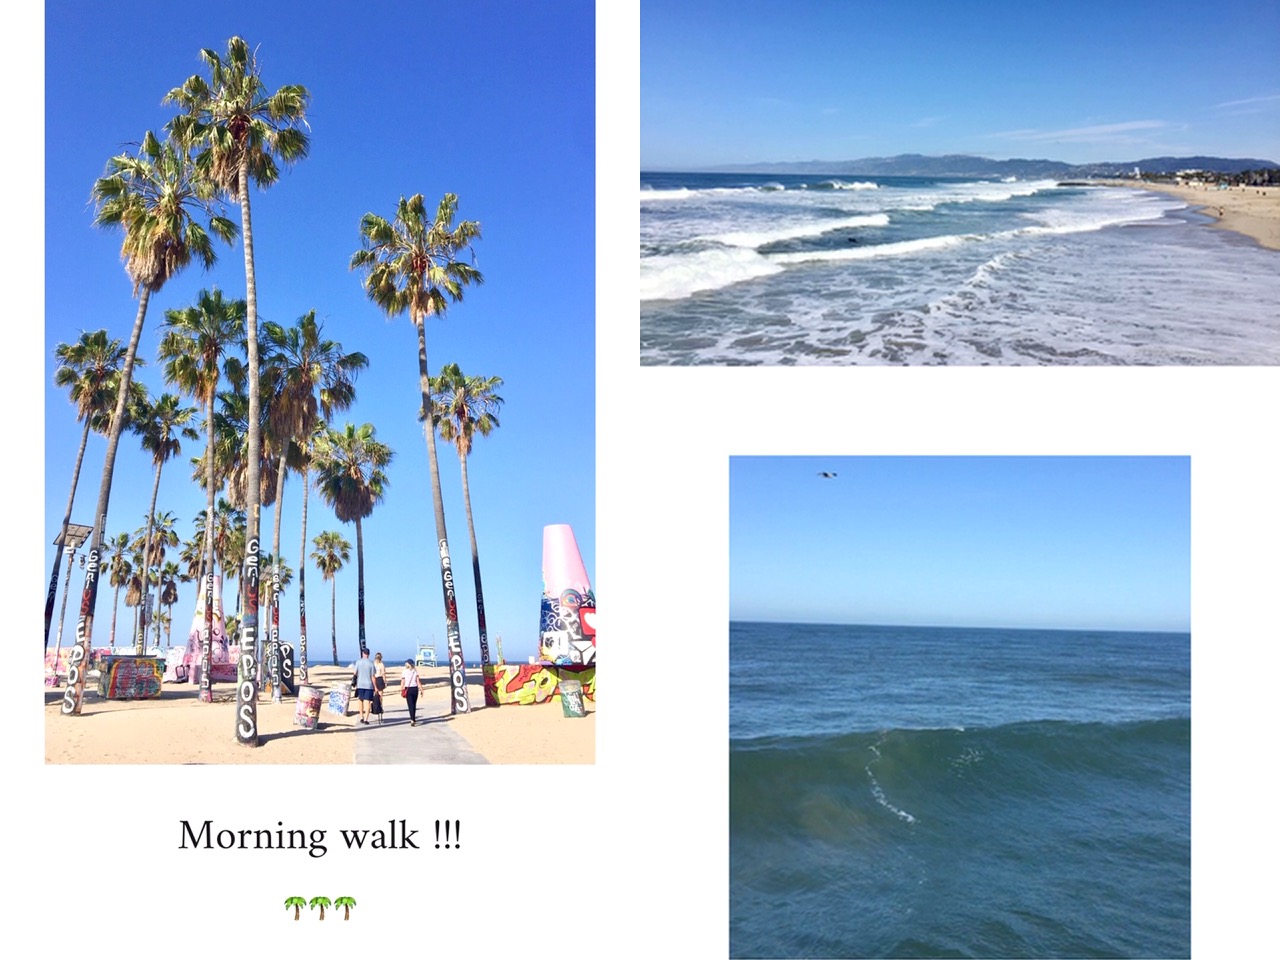 venice beach,mornign walk,cartes postales,californie,los angeles,aliceetfantomettre,aliceetfantometteencalifornie,travel,travel guide,voyage